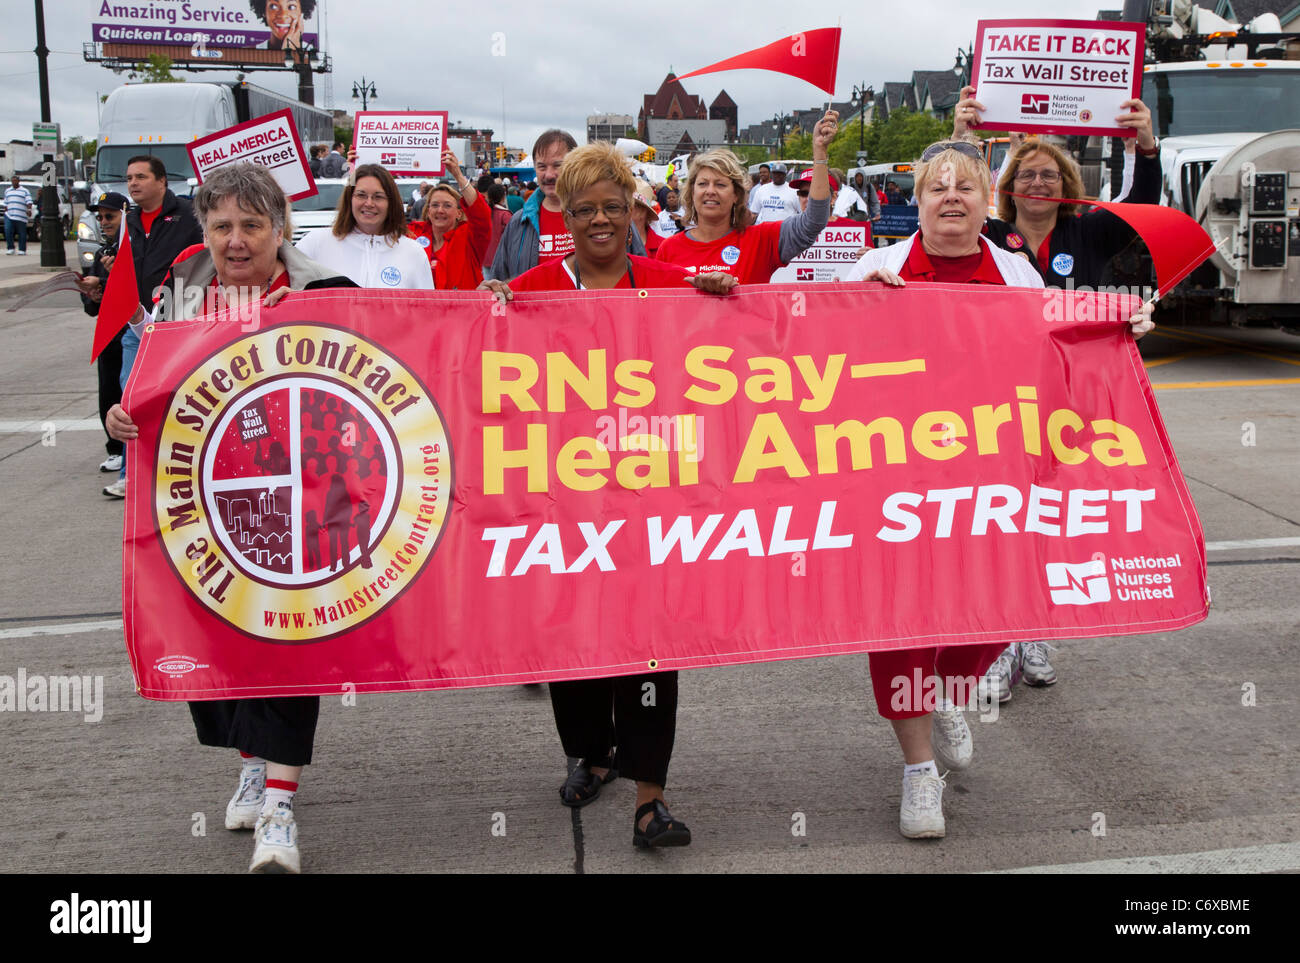 Detroit, Michigan - Miembros de Naciones nacional de enfermeras de marzo en el Desfile del Día del Trabajo, pidiendo mayores impuestos en Wall Street. Foto de stock